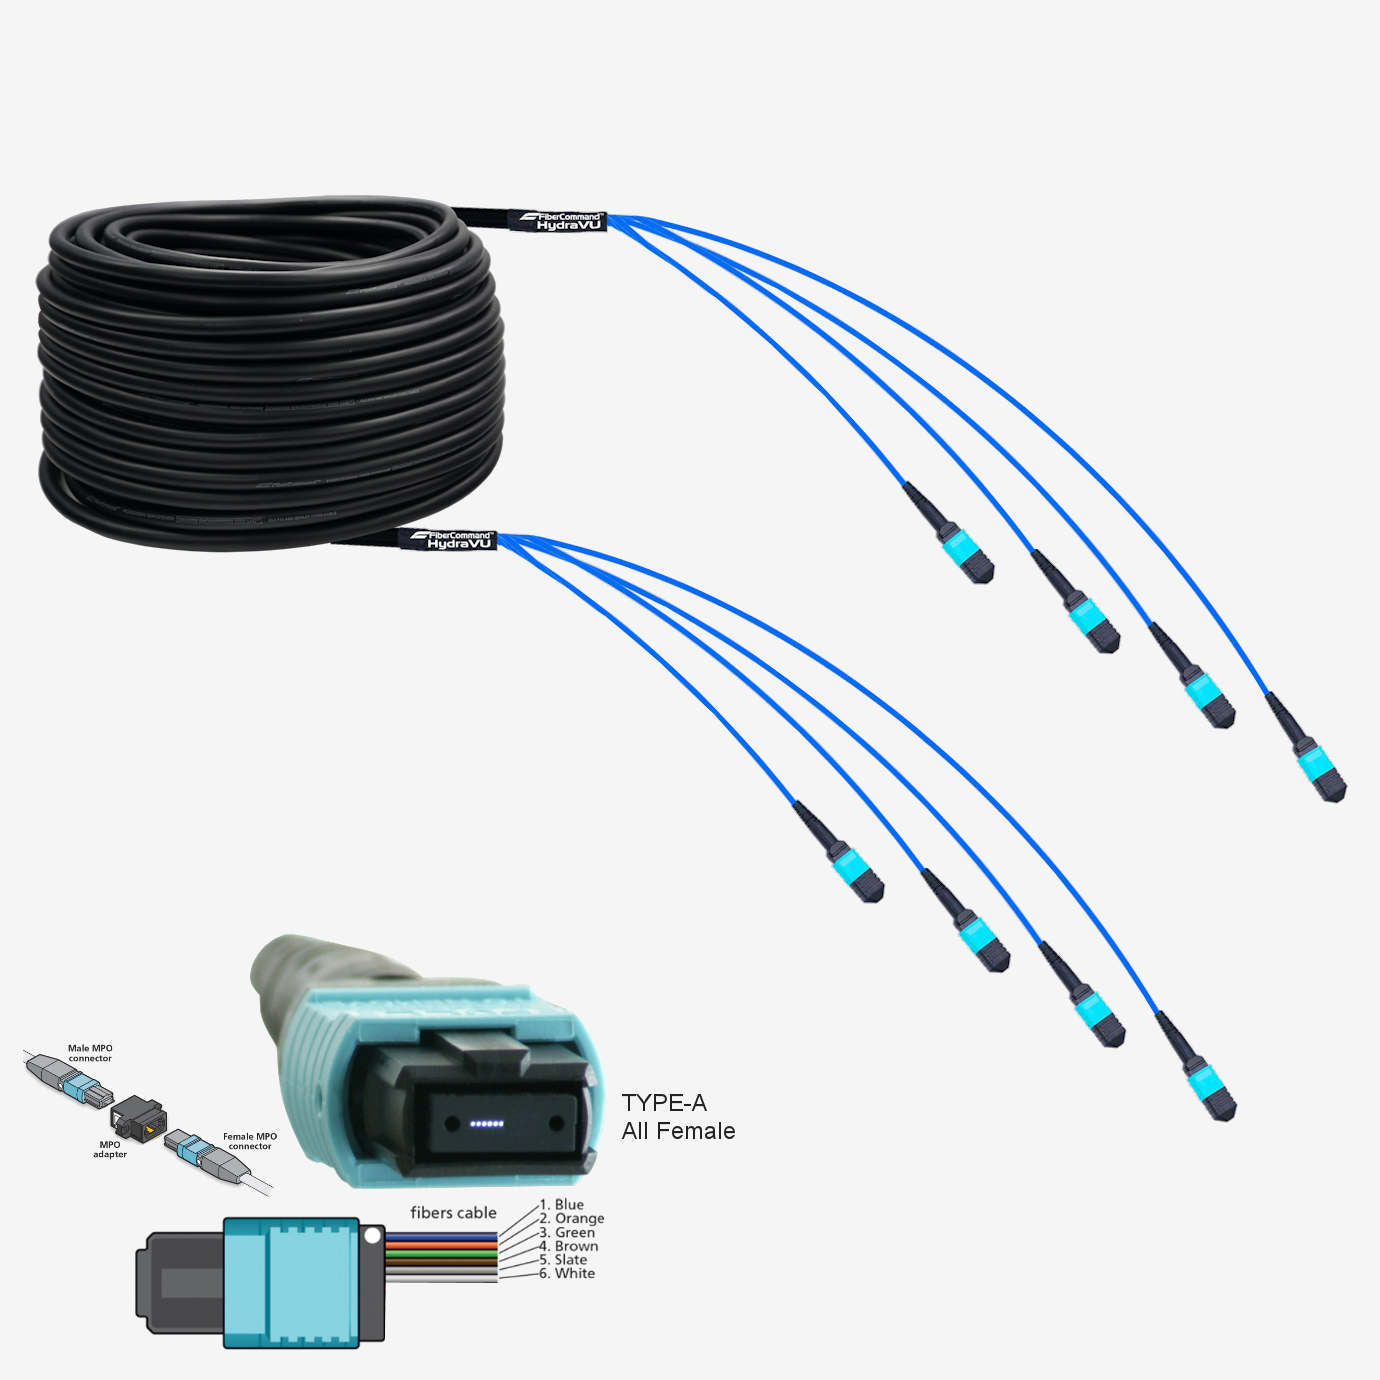 HDMI ARC vs câble optique : quelle est la meilleure option ? 